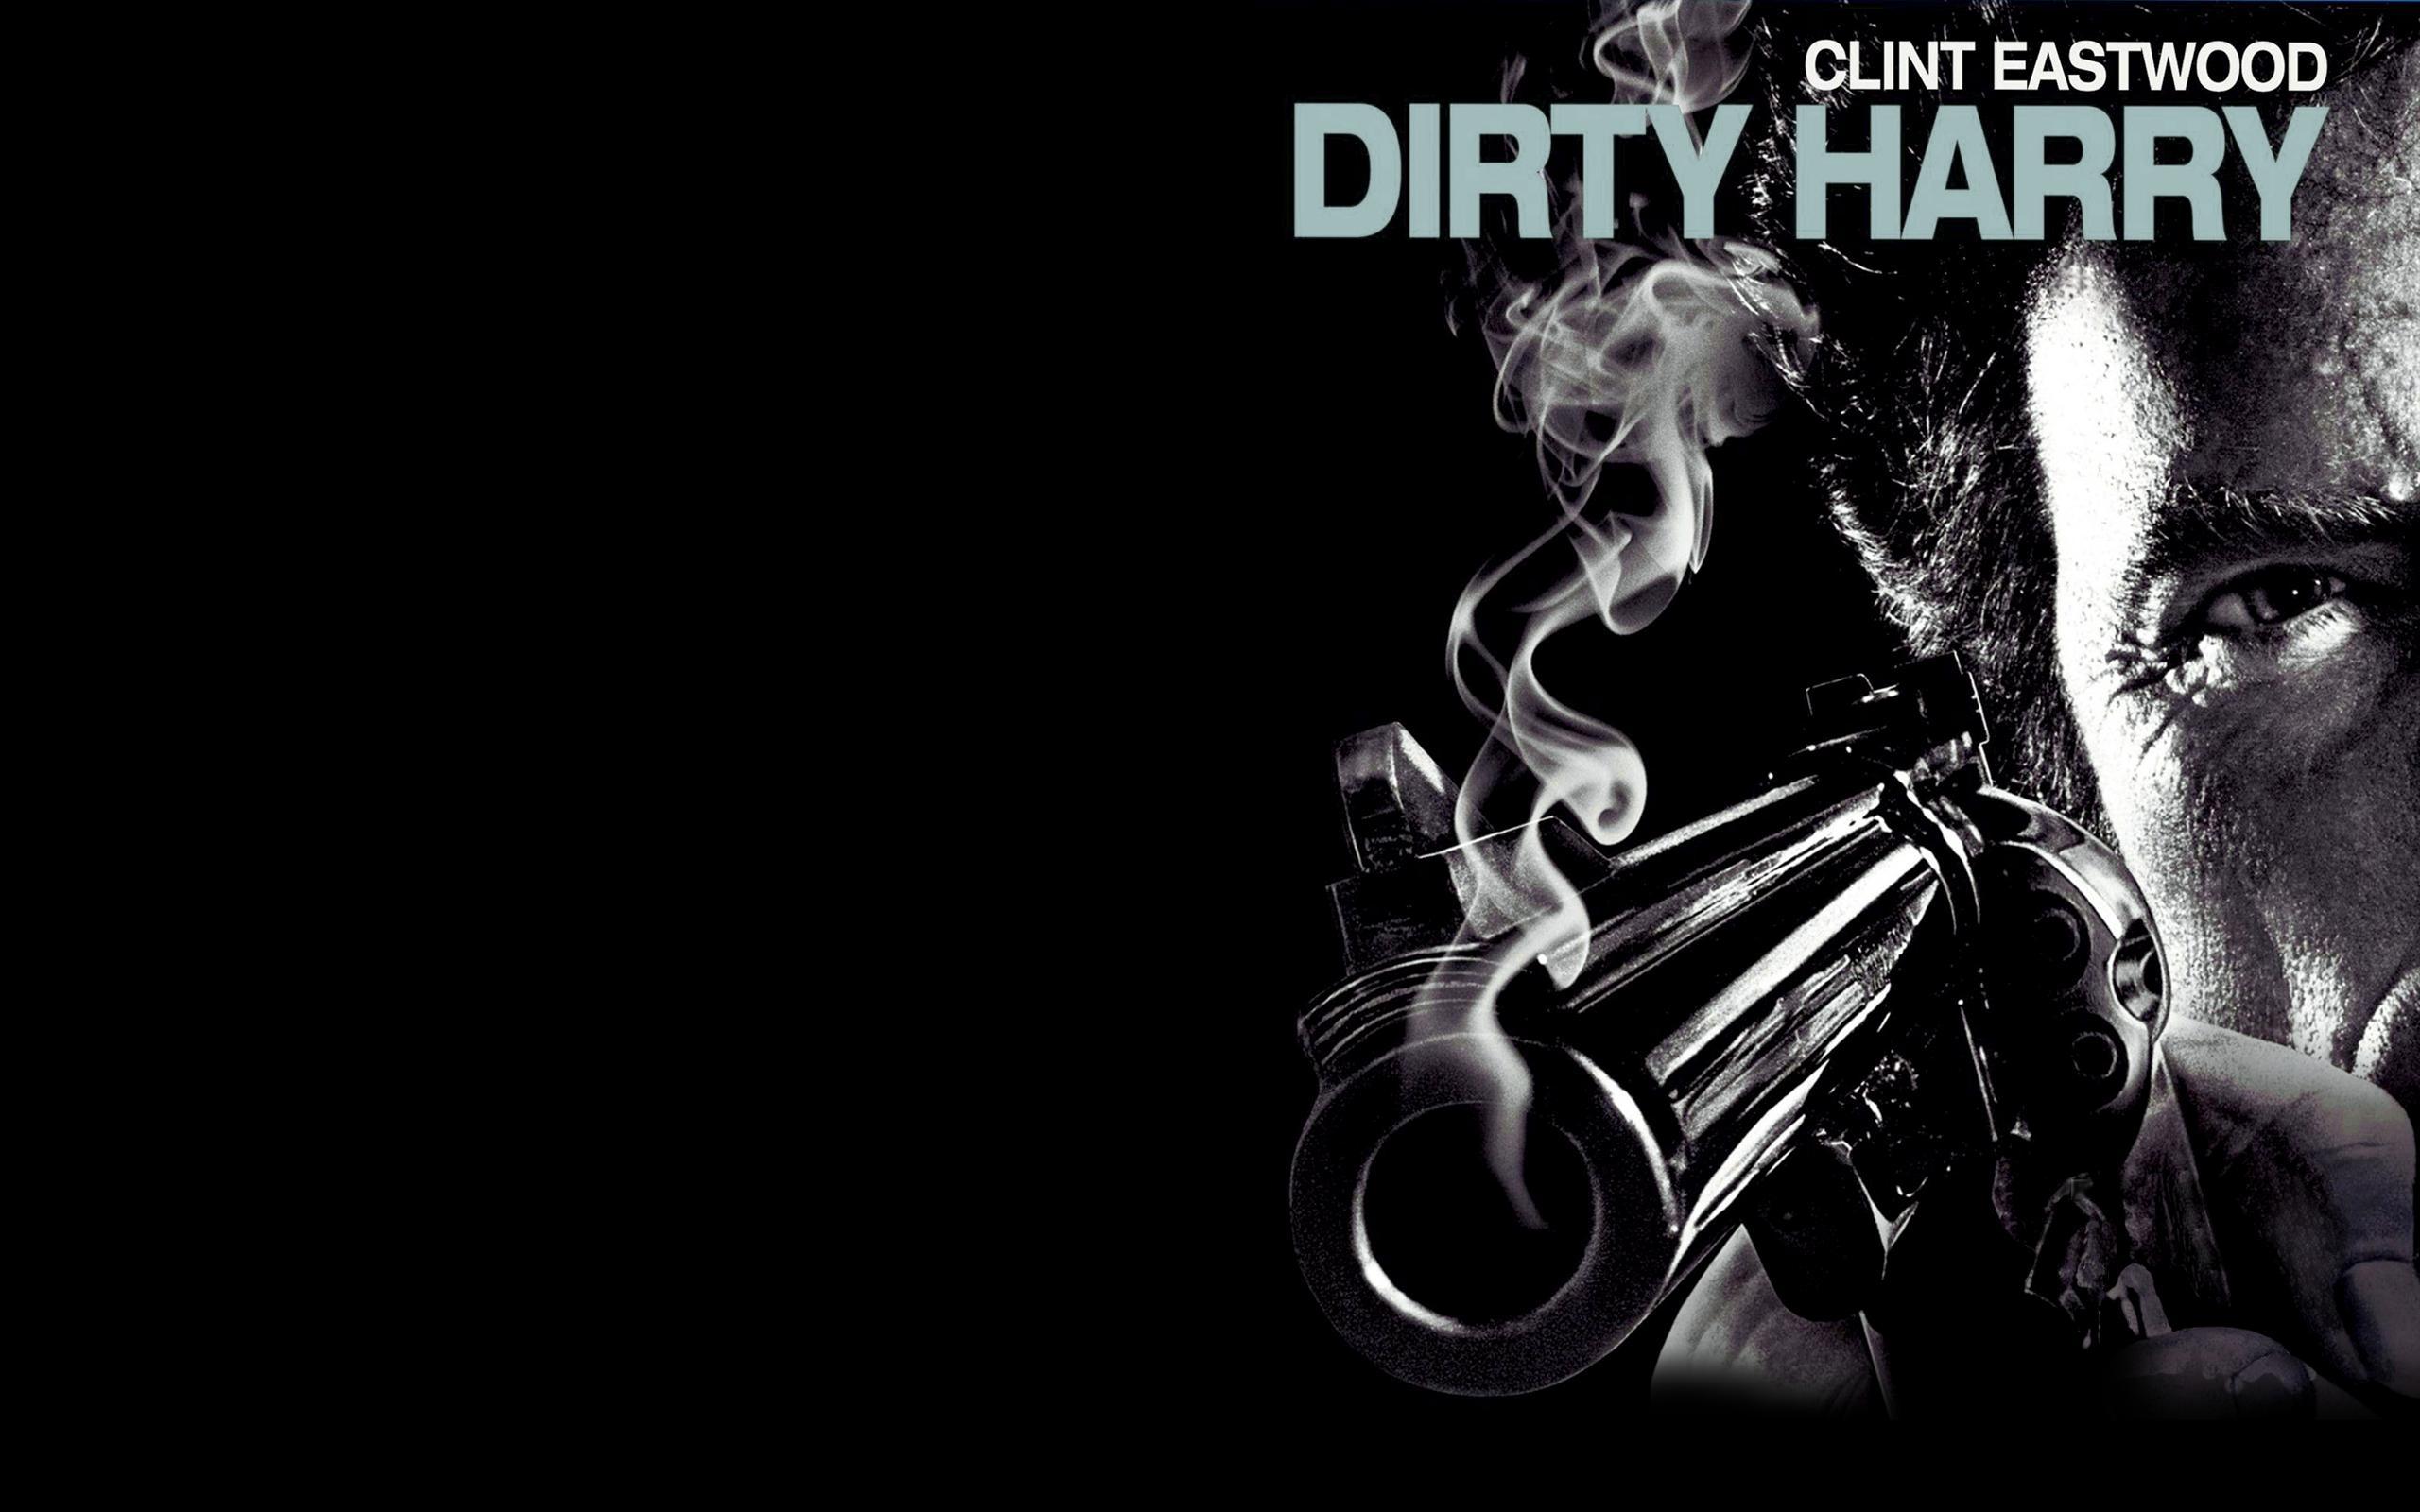 72+] Dirty Harry Wallpaper - WallpaperSafari